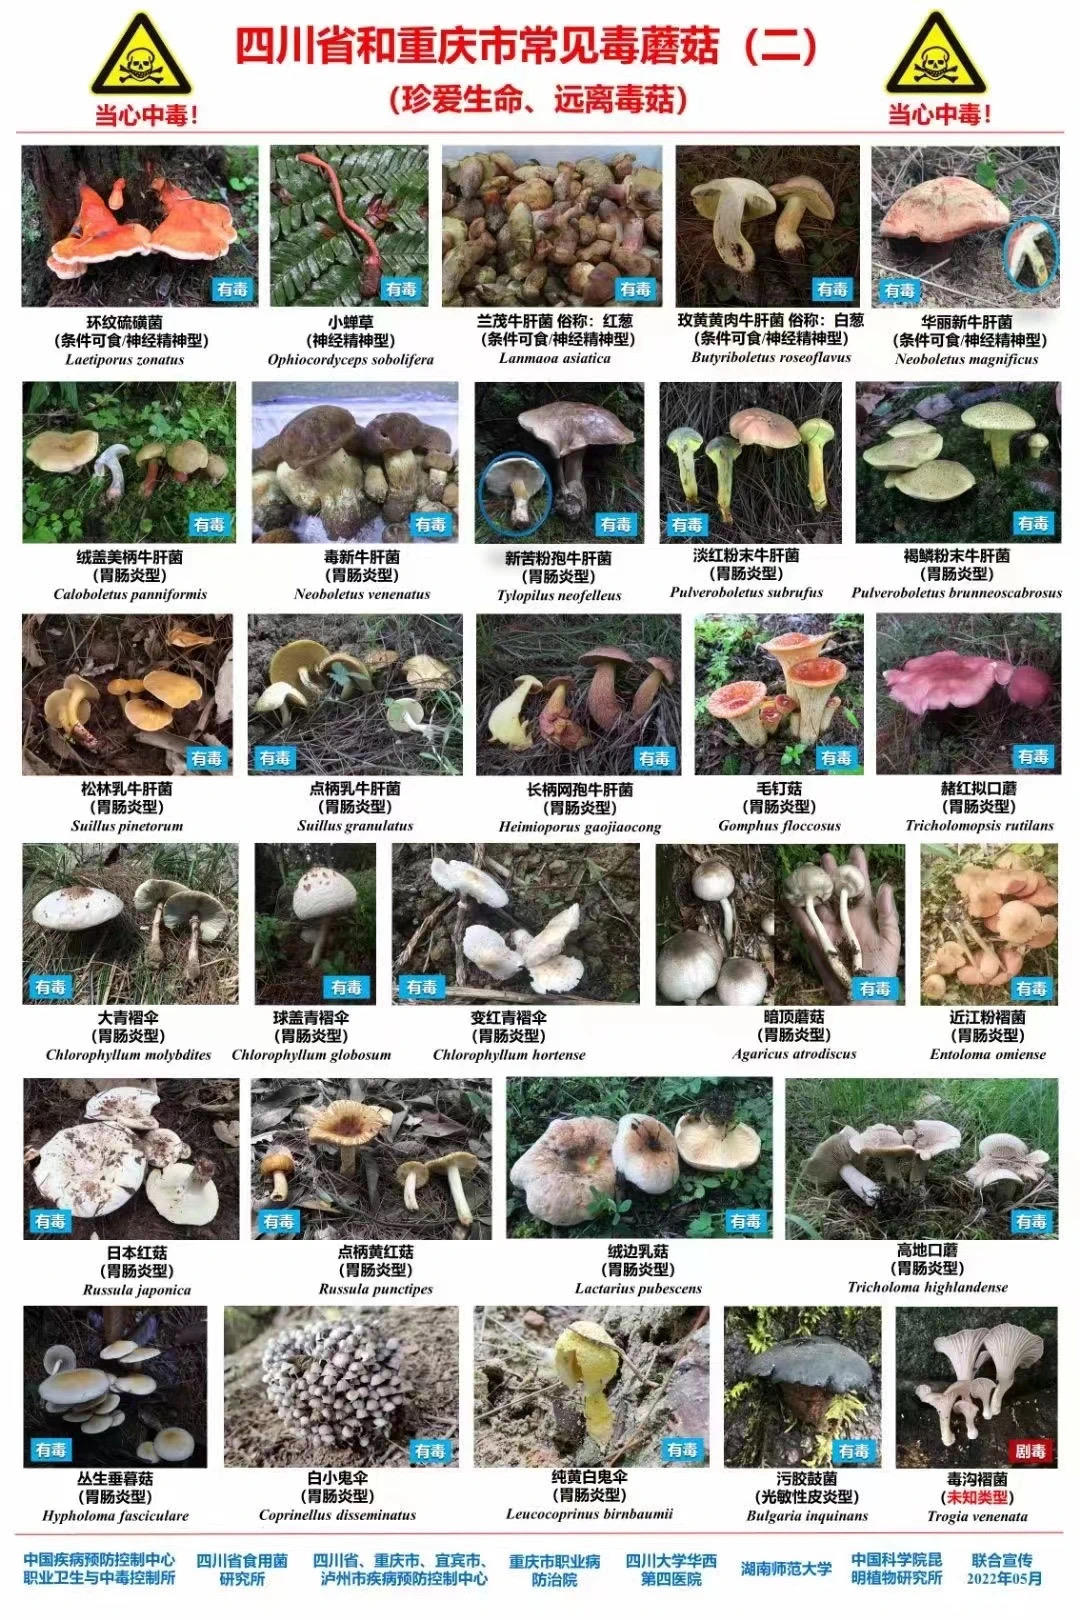 ▲四川省和重庆市常见毒蘑菇典型图谱 据健康西南